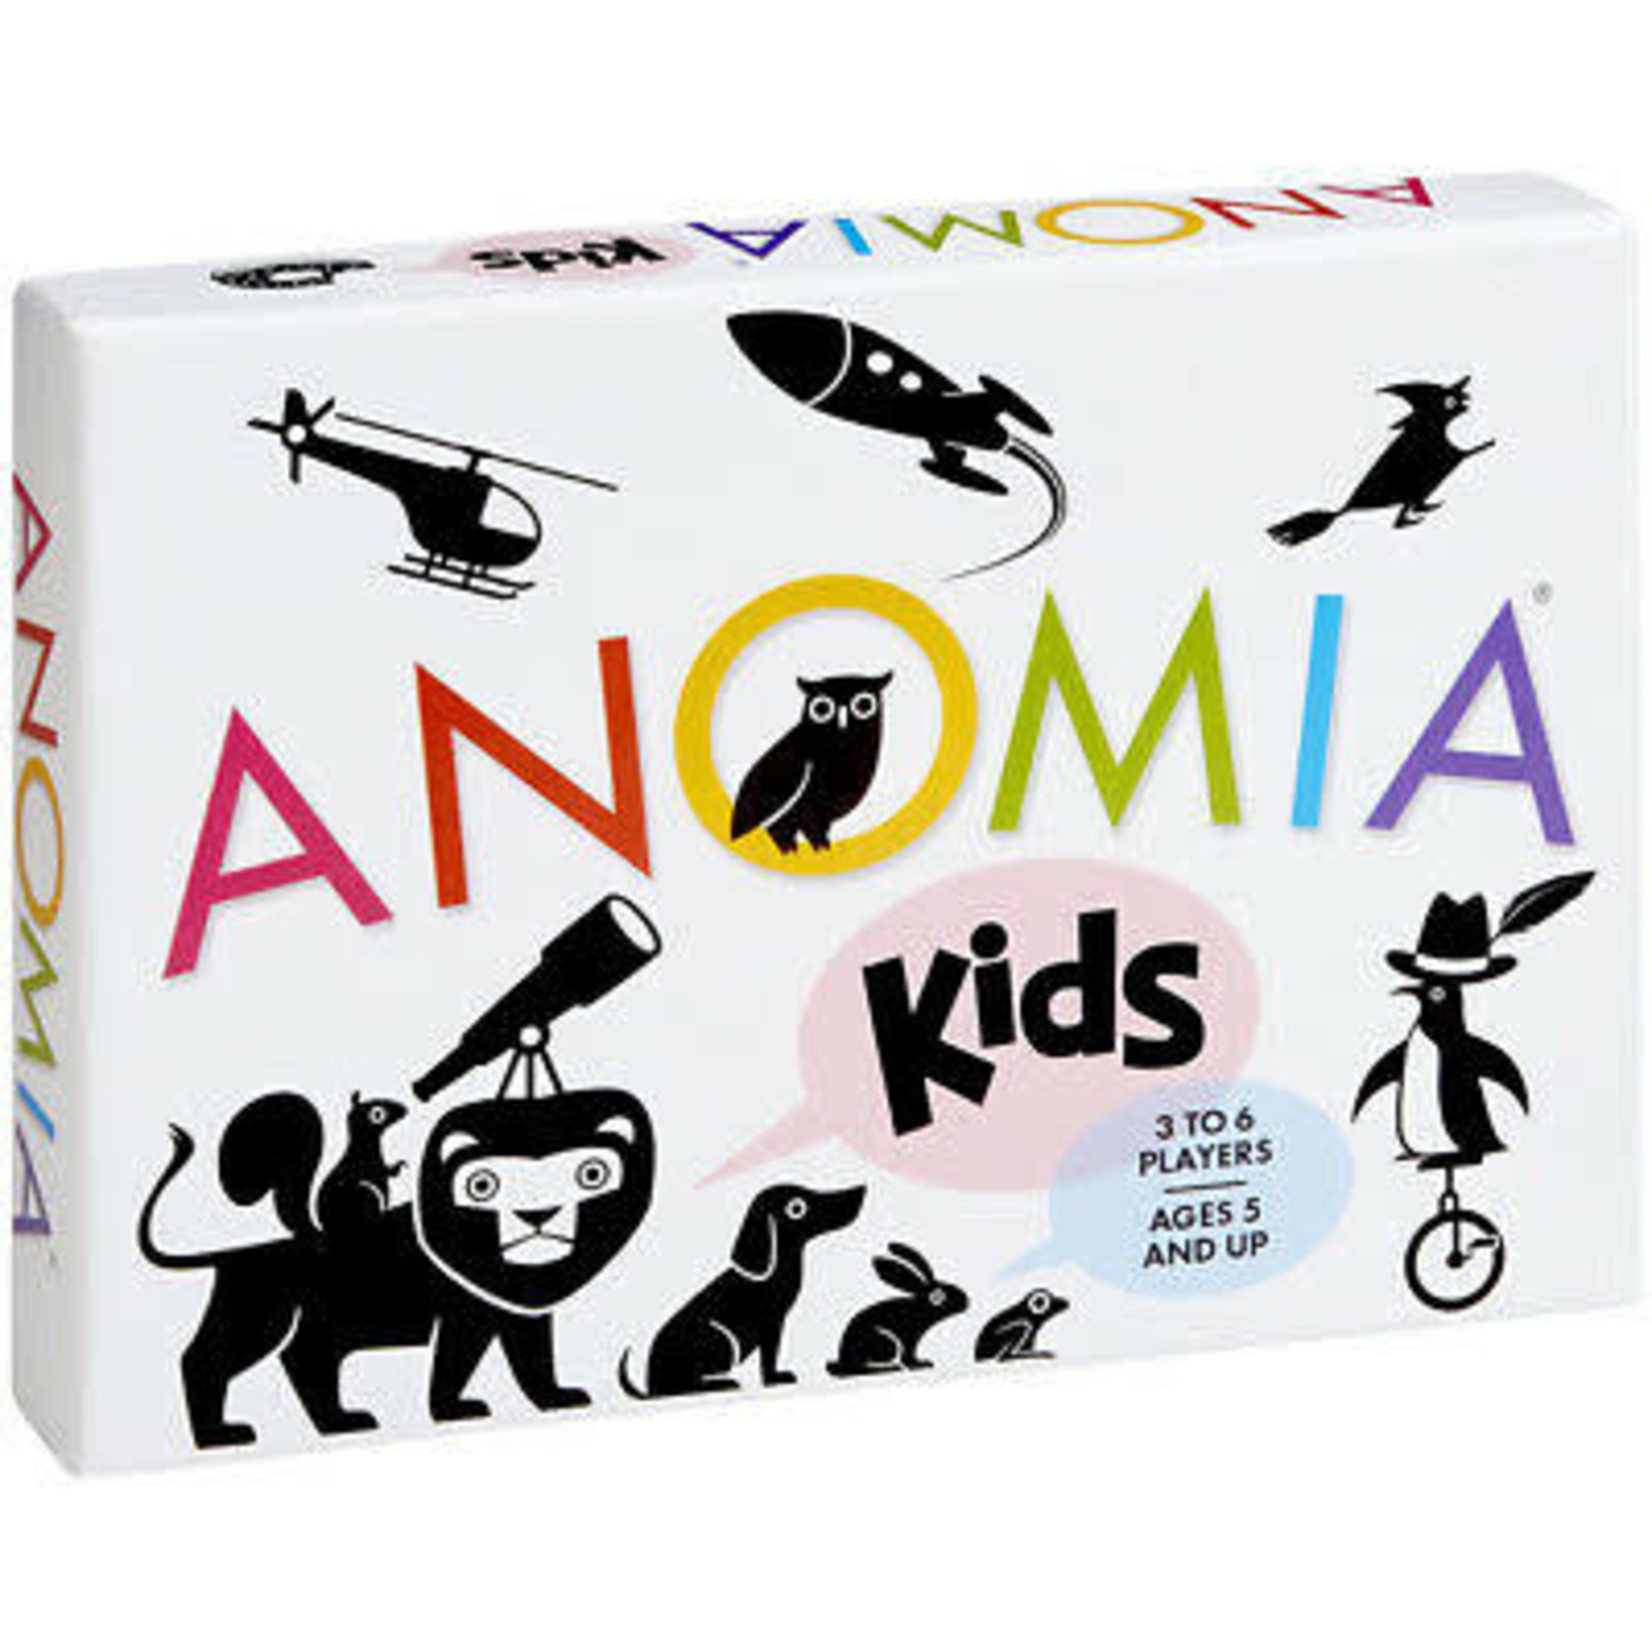 Anomia Anomia Kids